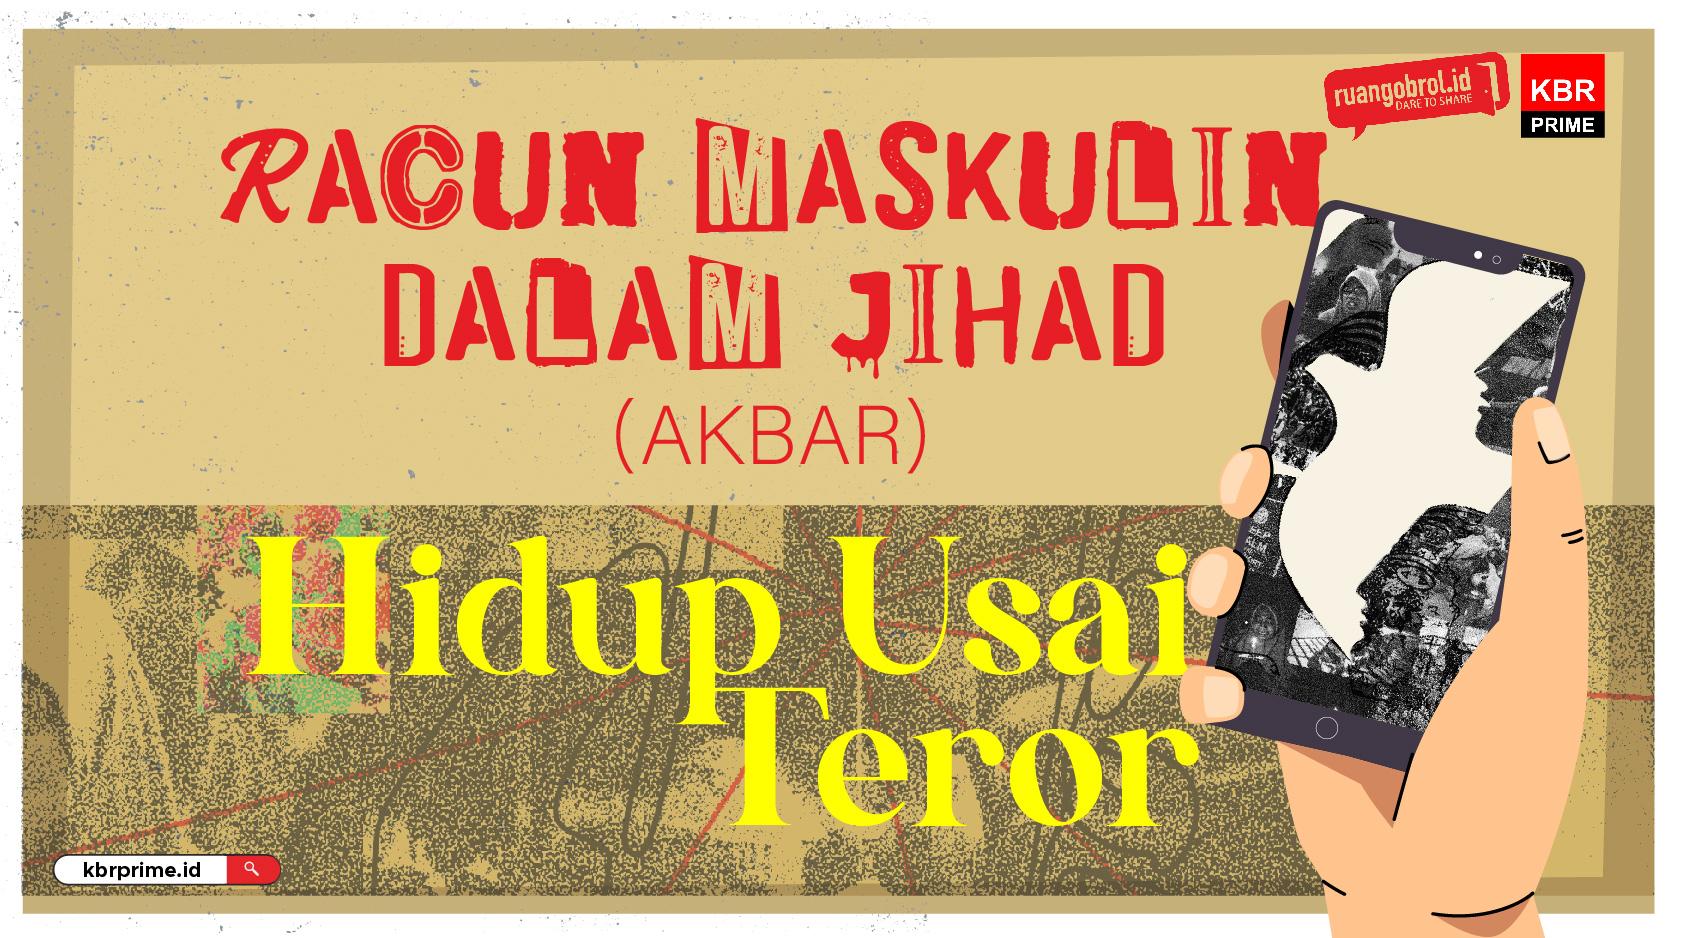 HIDUP USAI TEROR Season 2 : Racun Maskulin Dalam Jihad (Part 2)